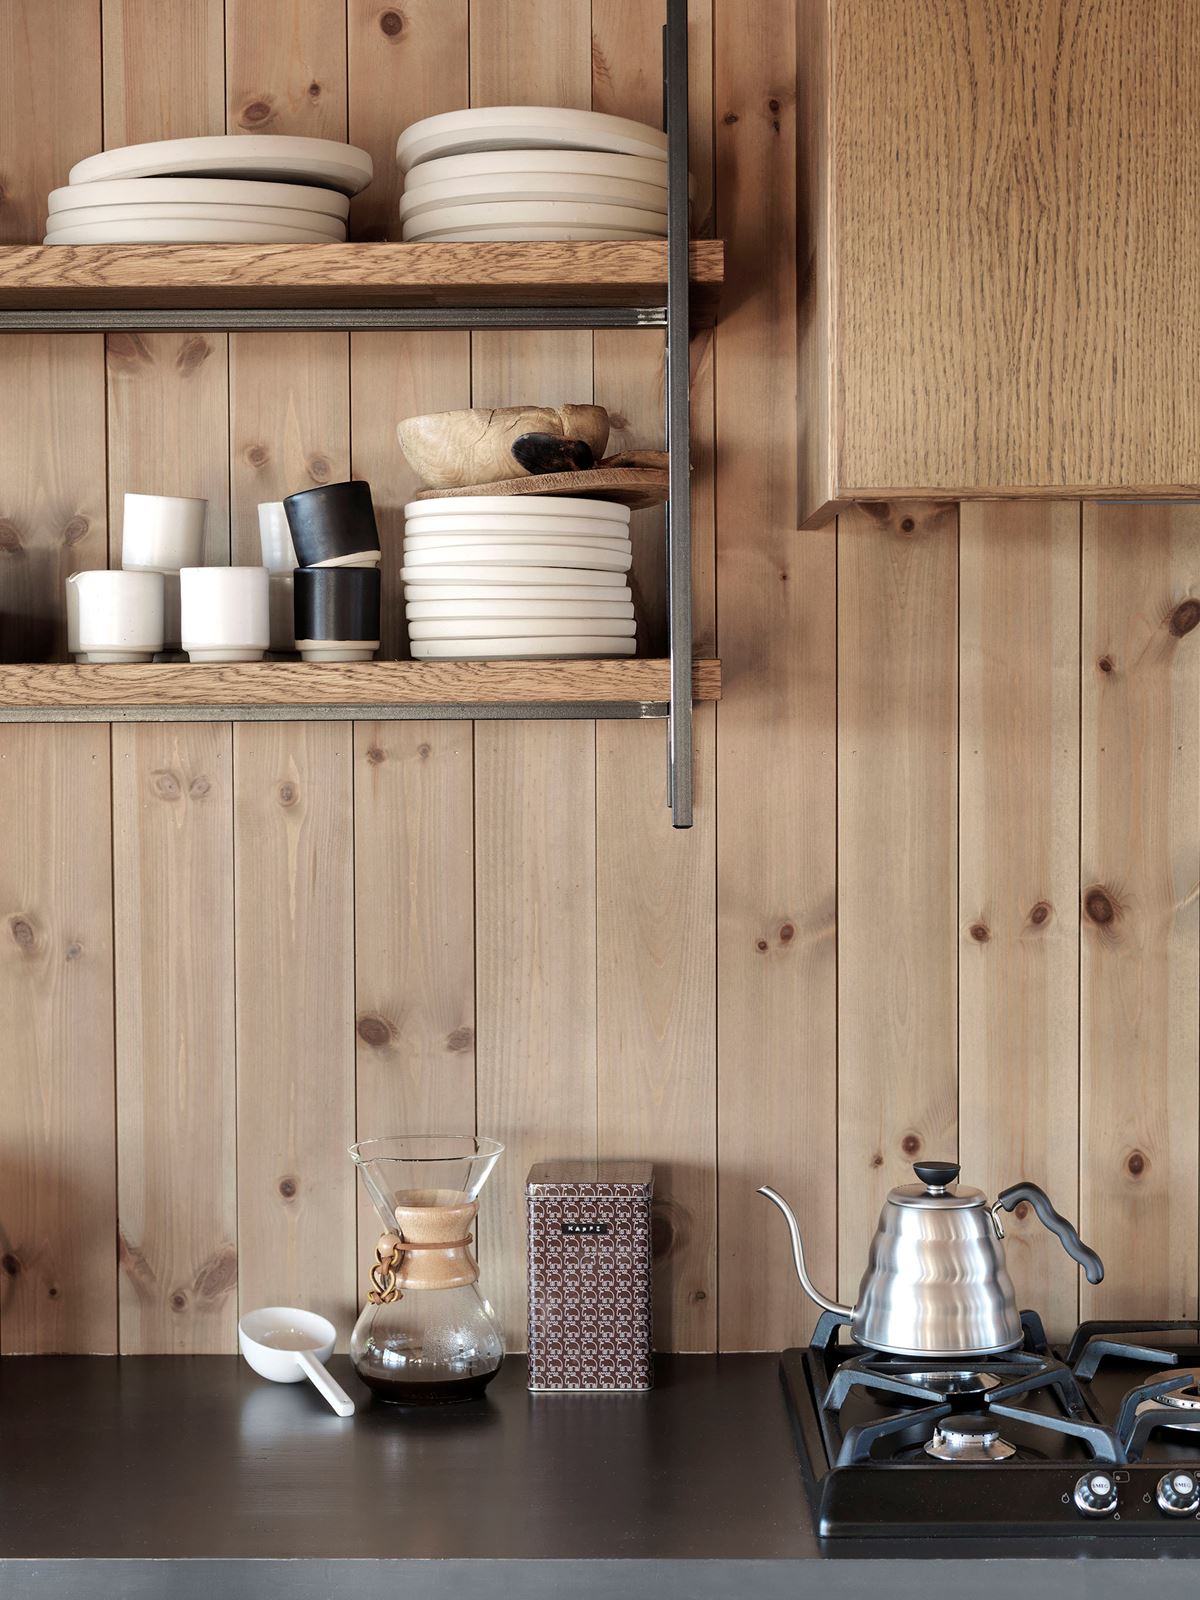 Et hytte-kjøkken med en kaffekoker